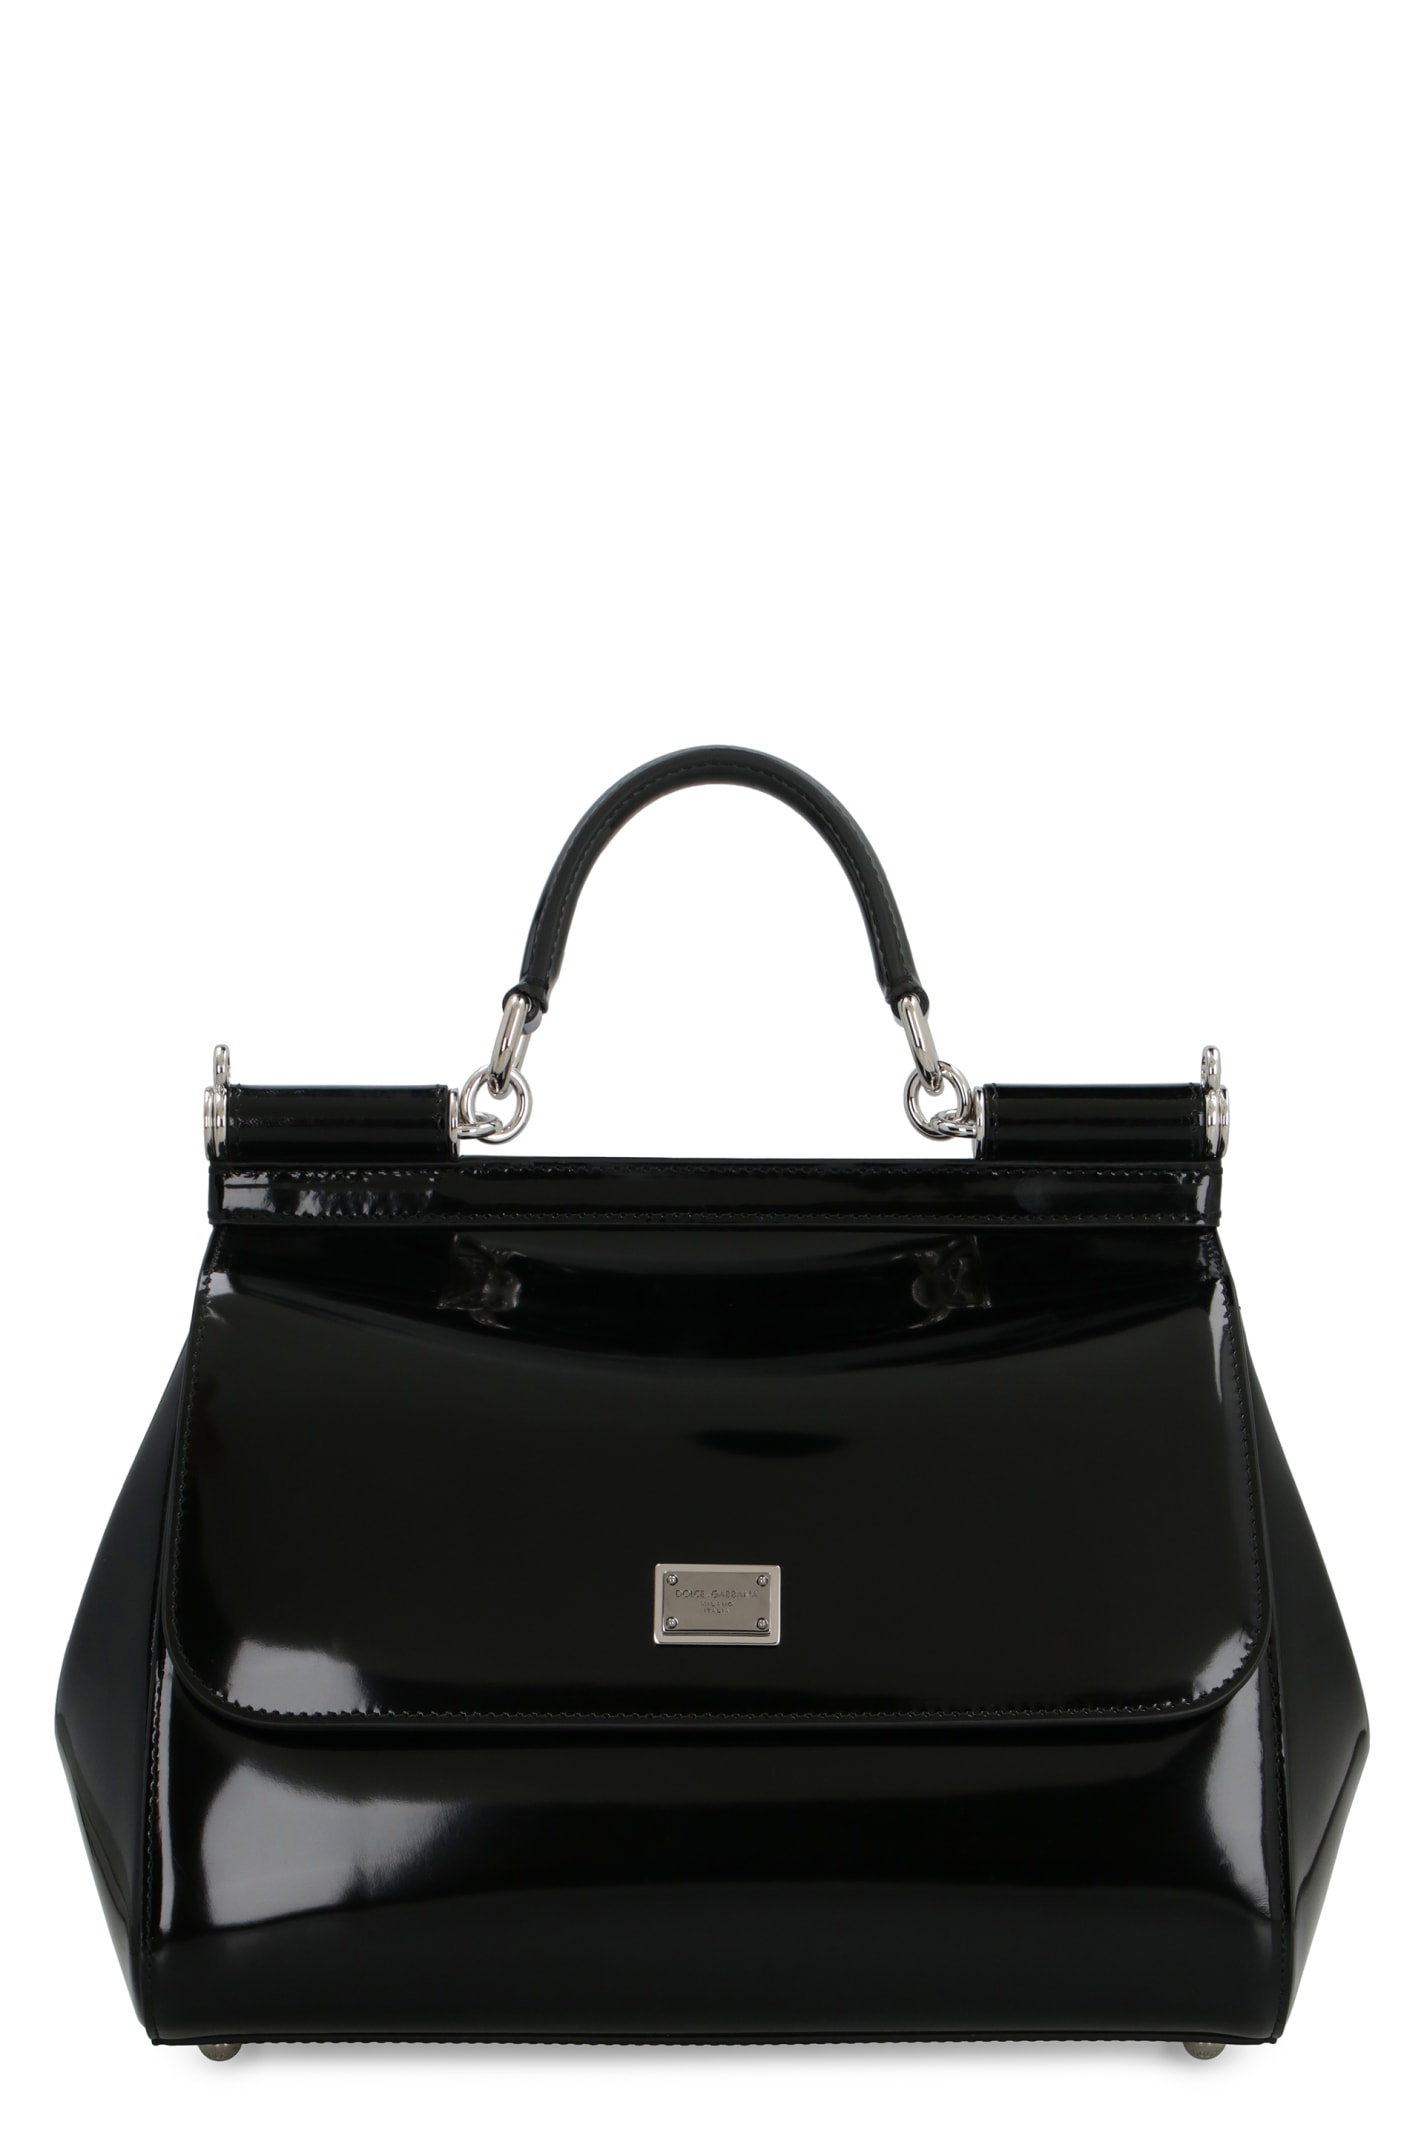 Shop Dolce & Gabbana Kim Dolce&gabbana - Sicily Leather Handbag In Nero